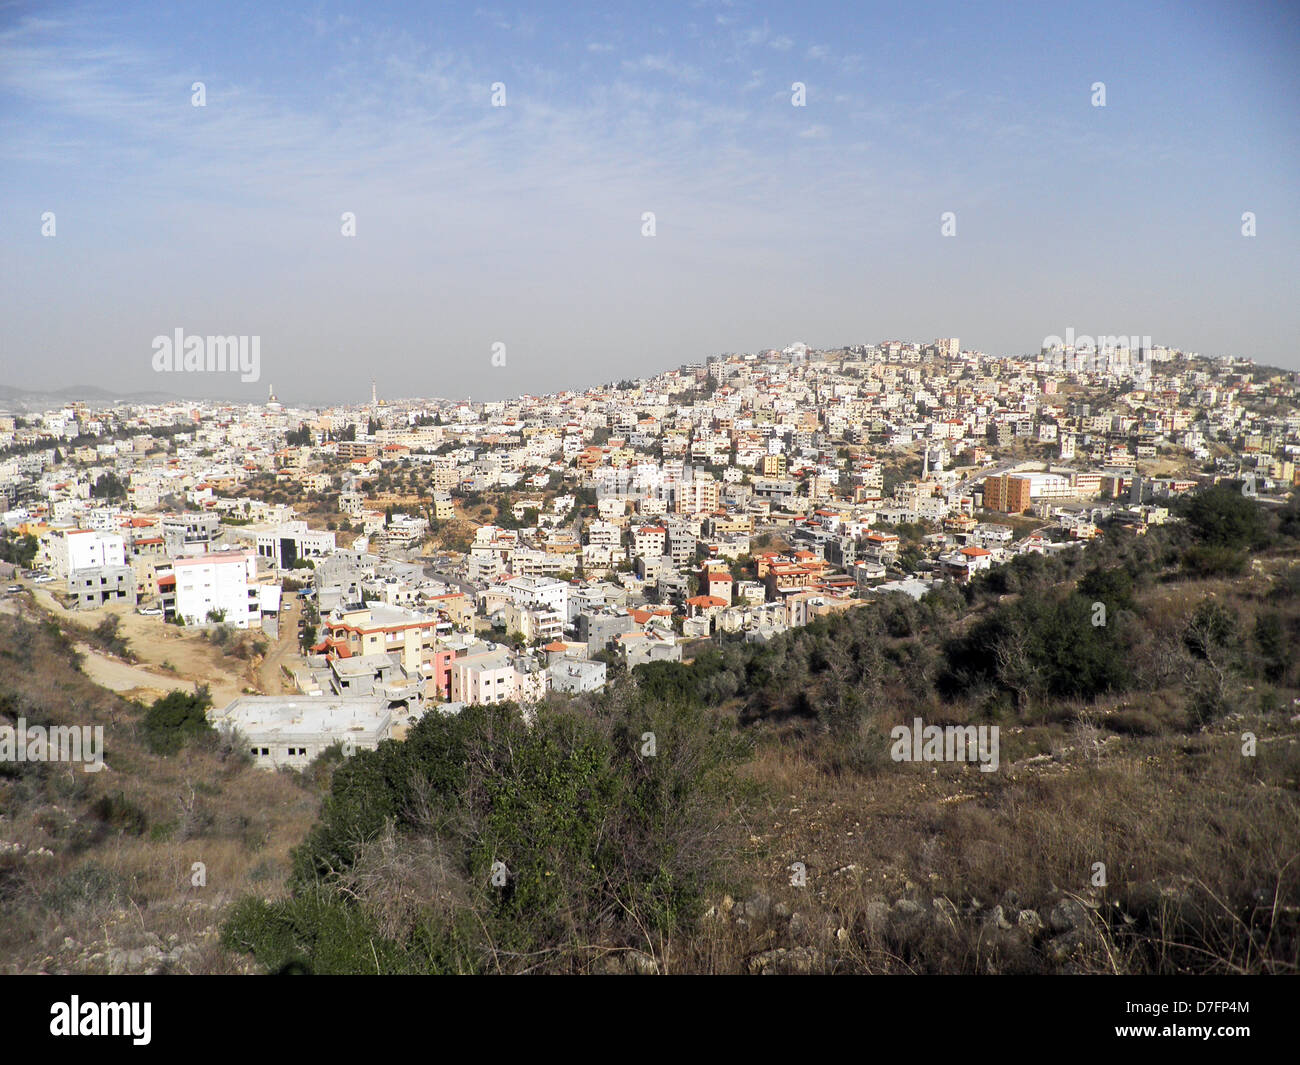 Arab town of Um El Fahem in Wadi Ara, Israel Stock Photo